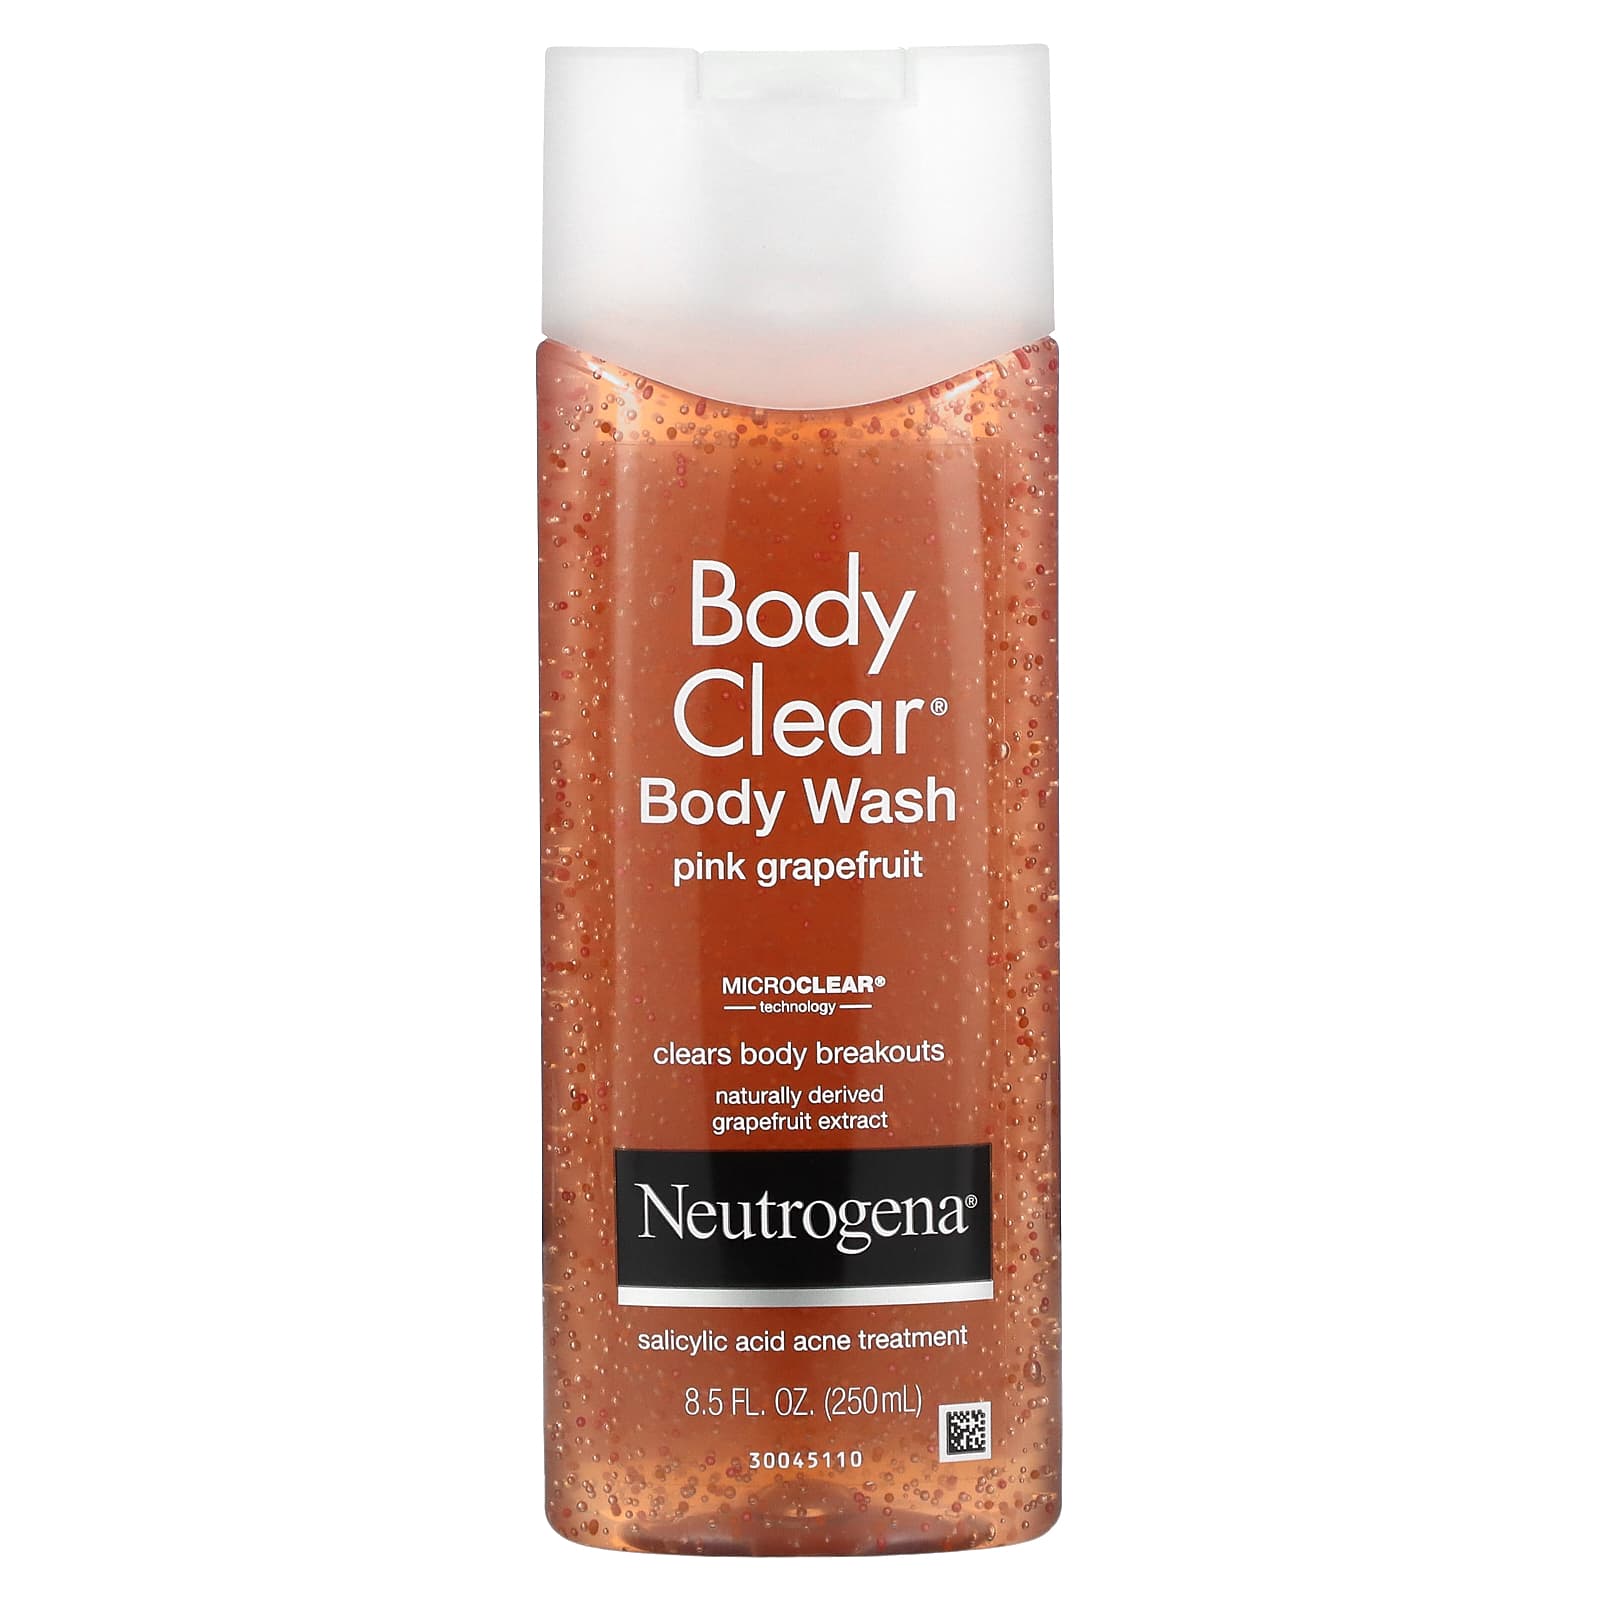 Regulering Skjult Afskrække Neutrogena, Body Clear, Body Wash, Pink Grapefruit, 8.5 fl oz (250 ml)